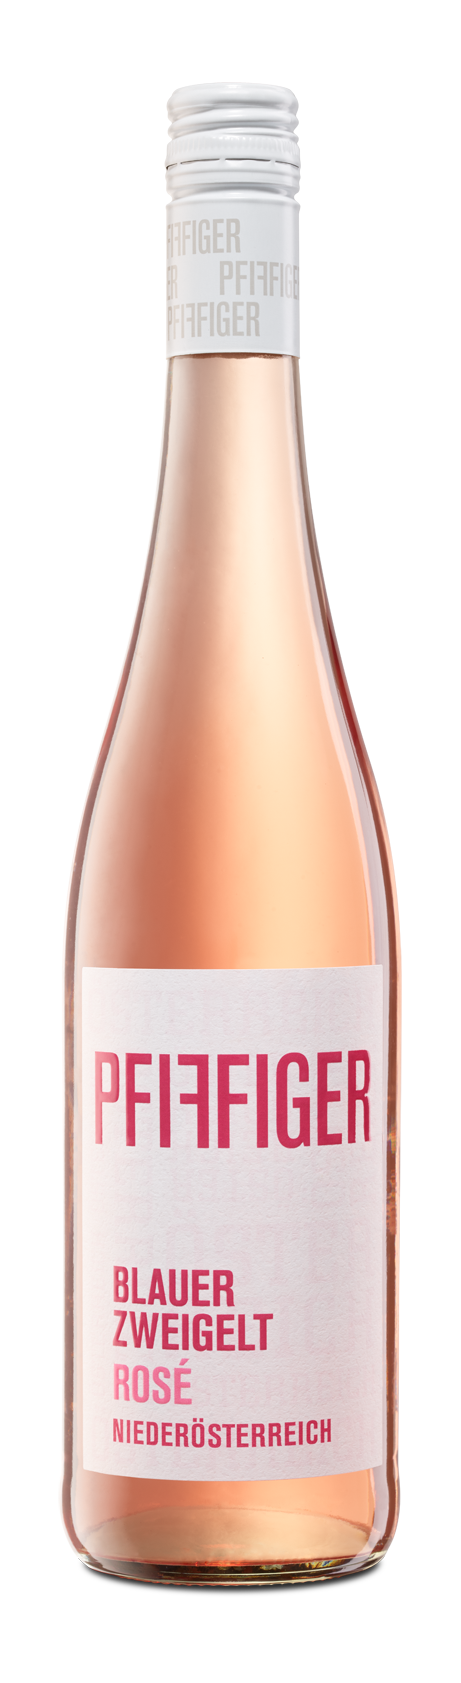 Pfiffiger – Blauer Zweigelt Rosé Global Quality - Wine Wines